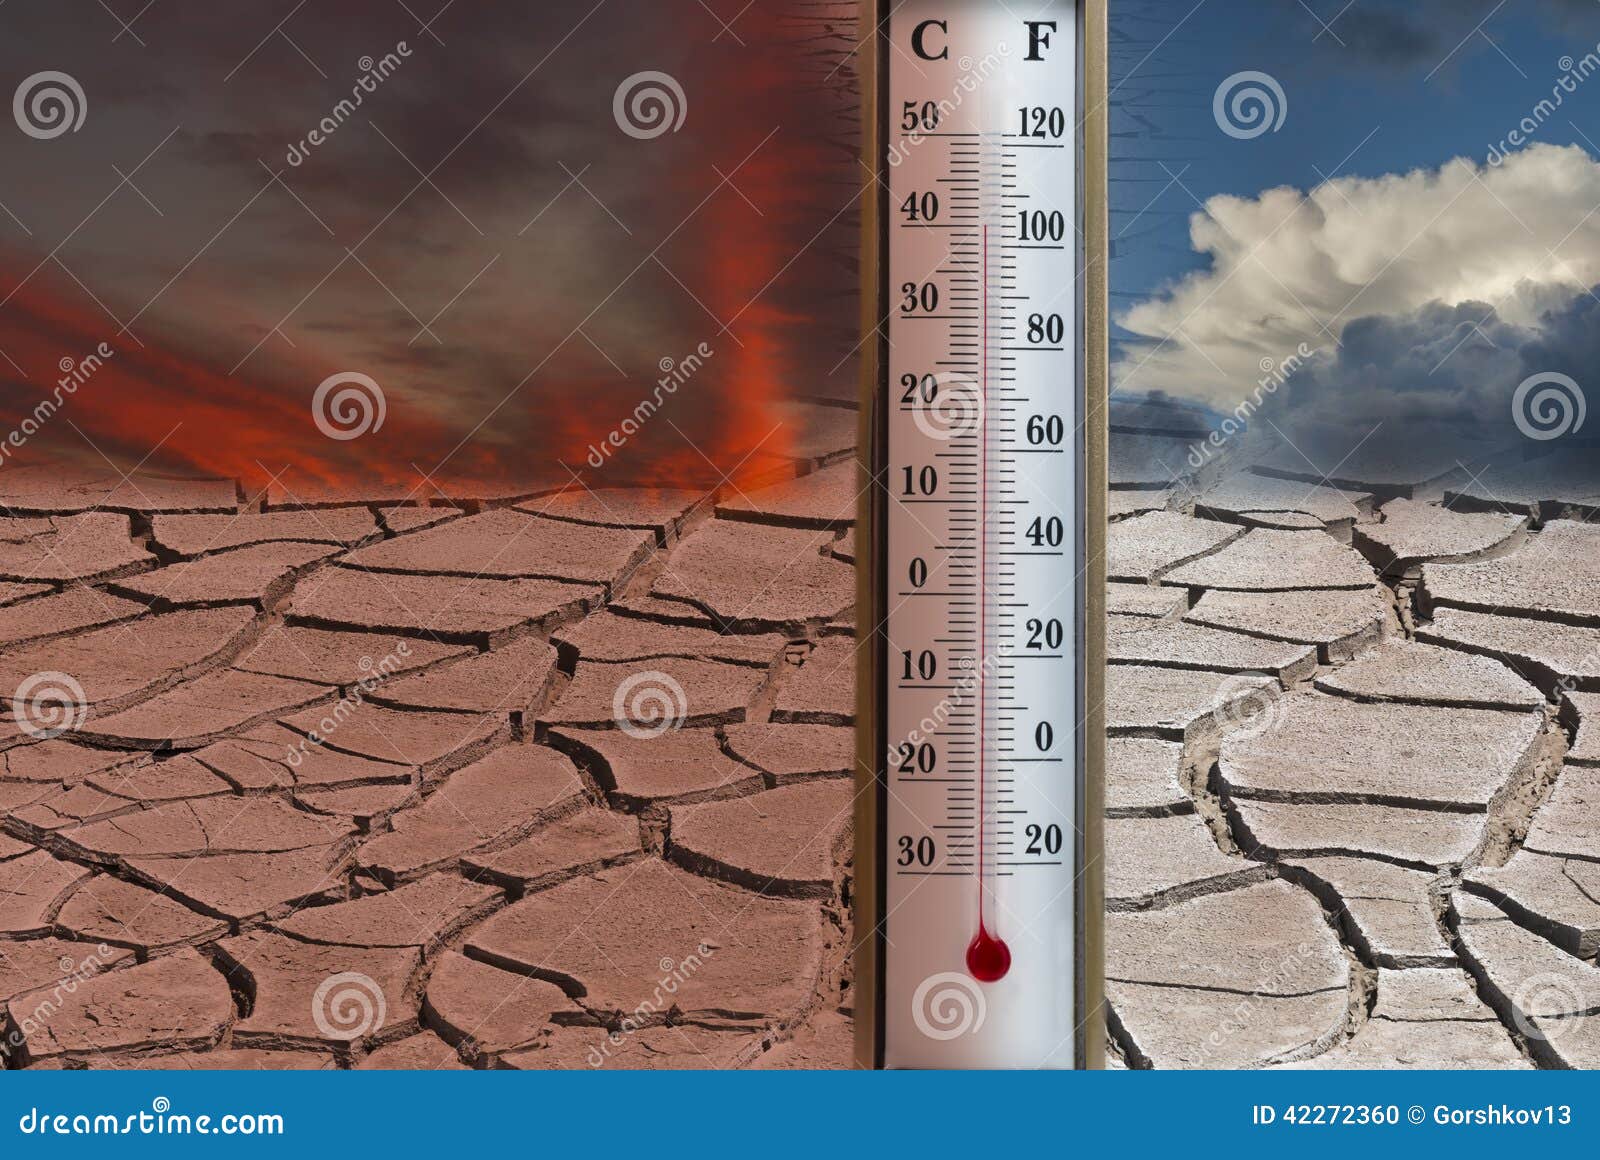 Экстремальная температура воздуха. Повышение температуры земли. Высокая температура. Изменение климата на планете. Изучение изменения климата.